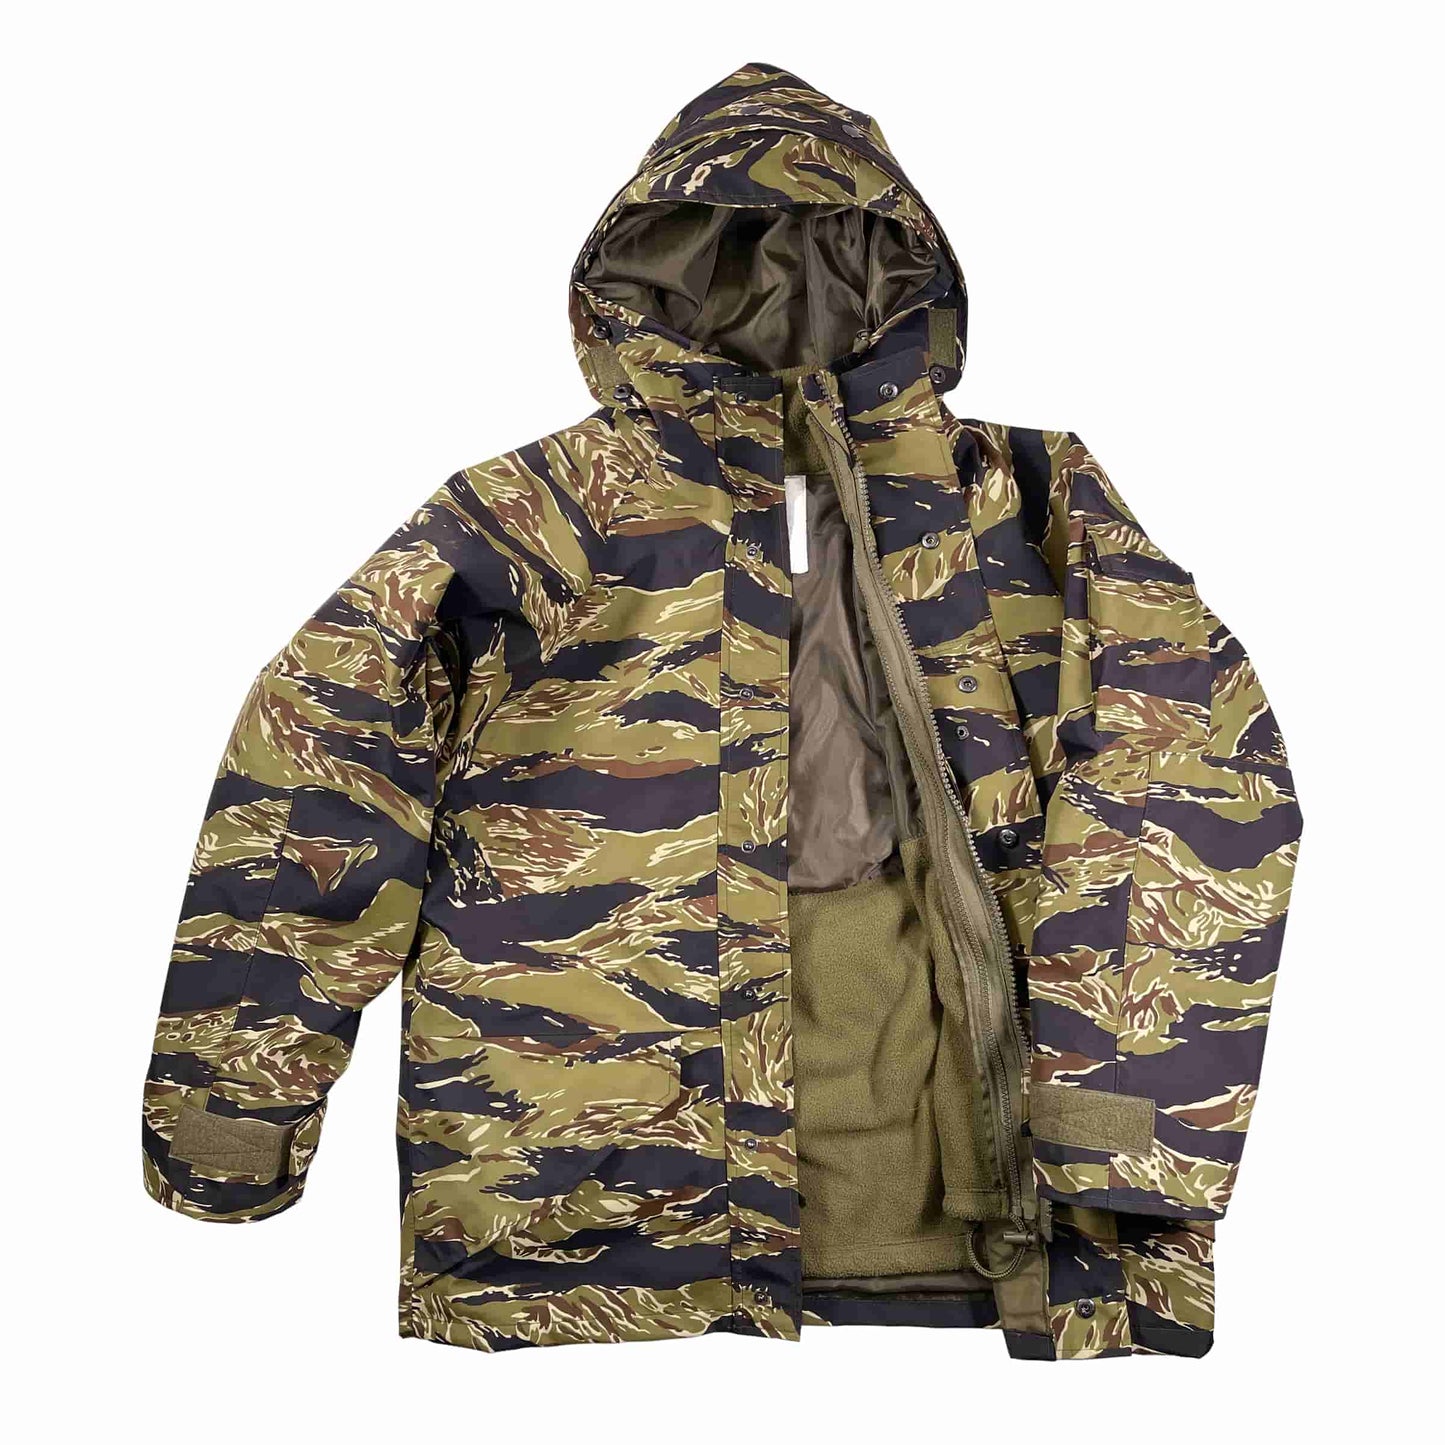 Black Gunpowder Tiger Stripe Hooded Windproof Field Jacket With Detachable Warm Fleece Lining